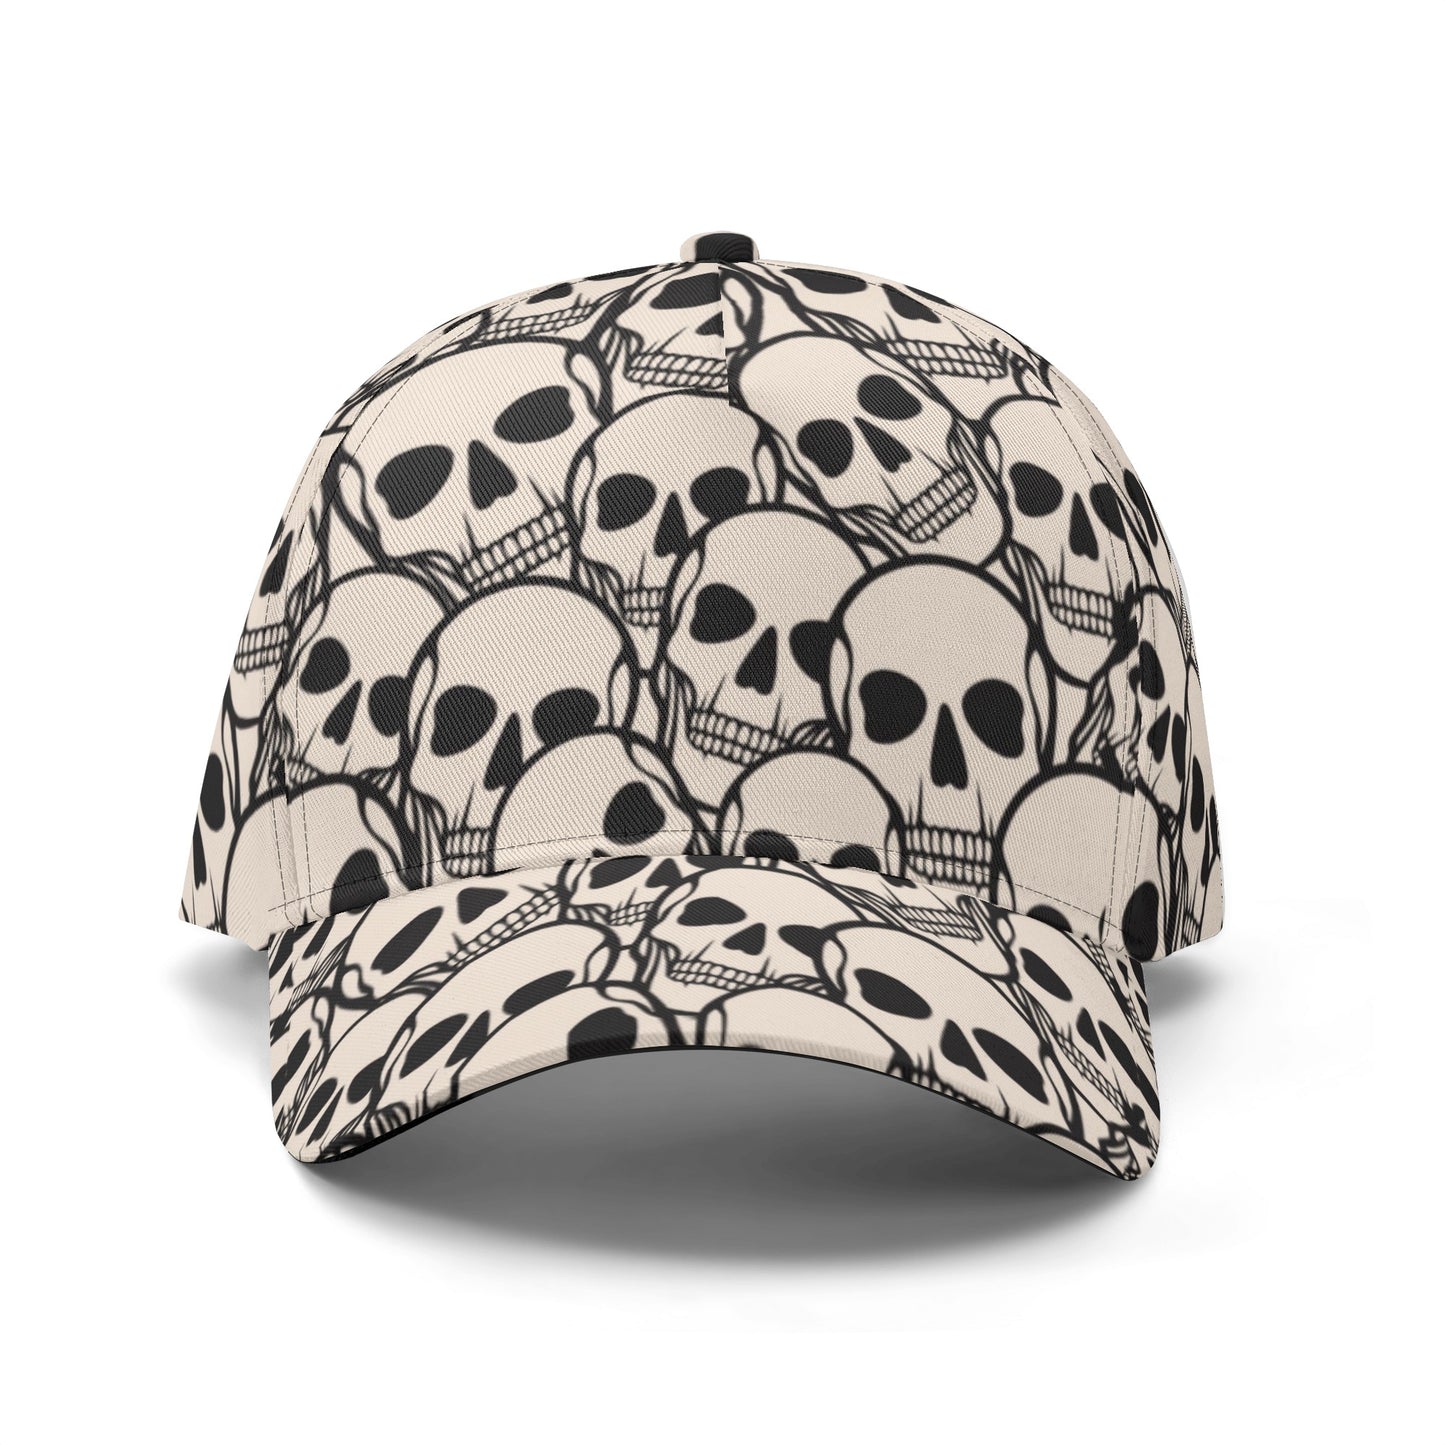 Skull Heads Baseball Cap